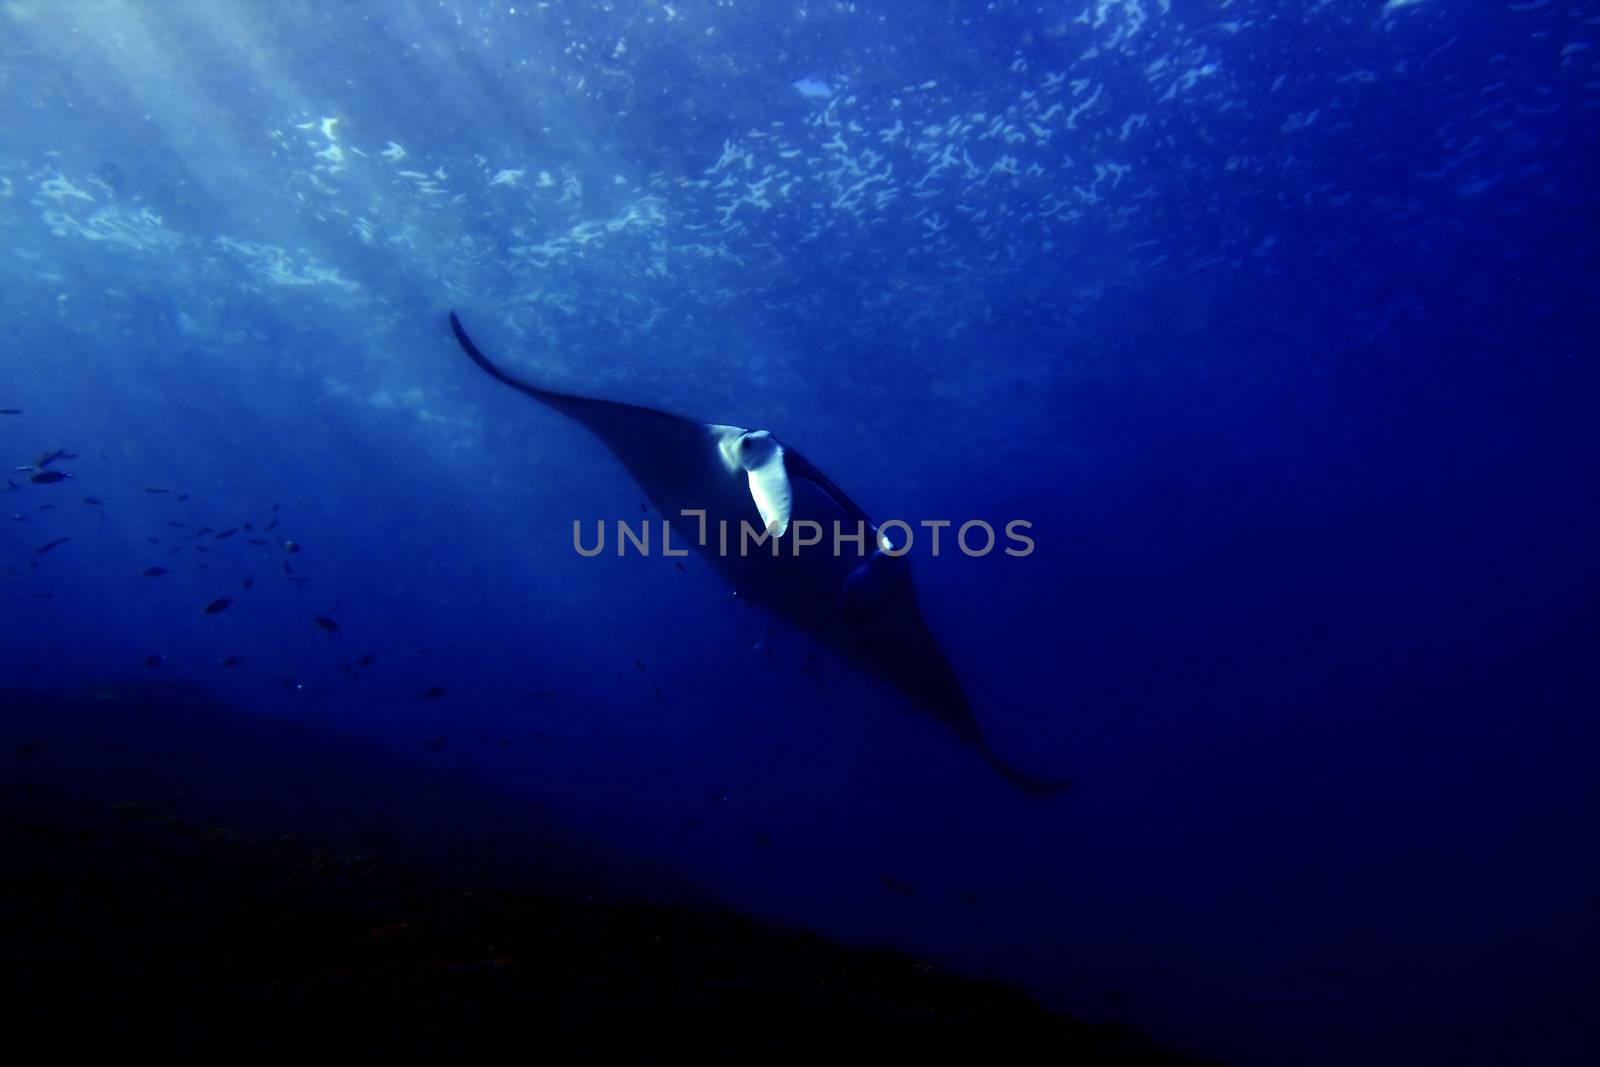 Manta ray at Manta Point divesite, Bali, Indonesia  